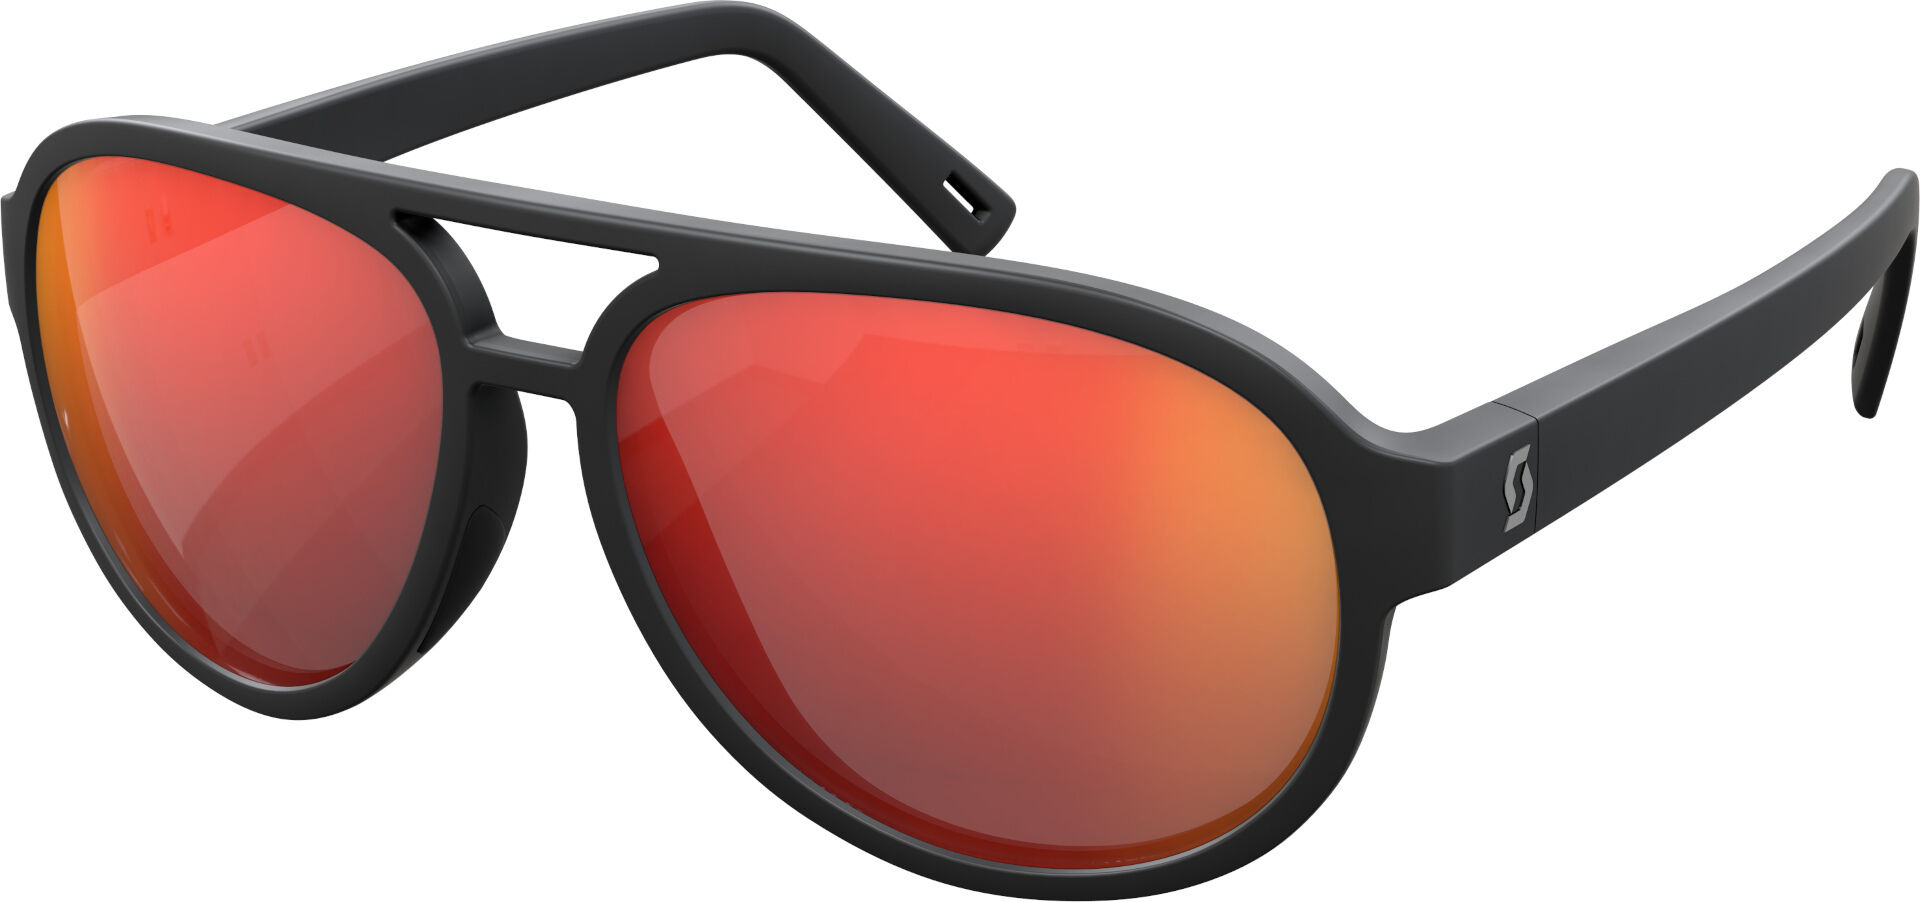 Scott Bass Chrome Gafas de sol - Negro (un tamaño)